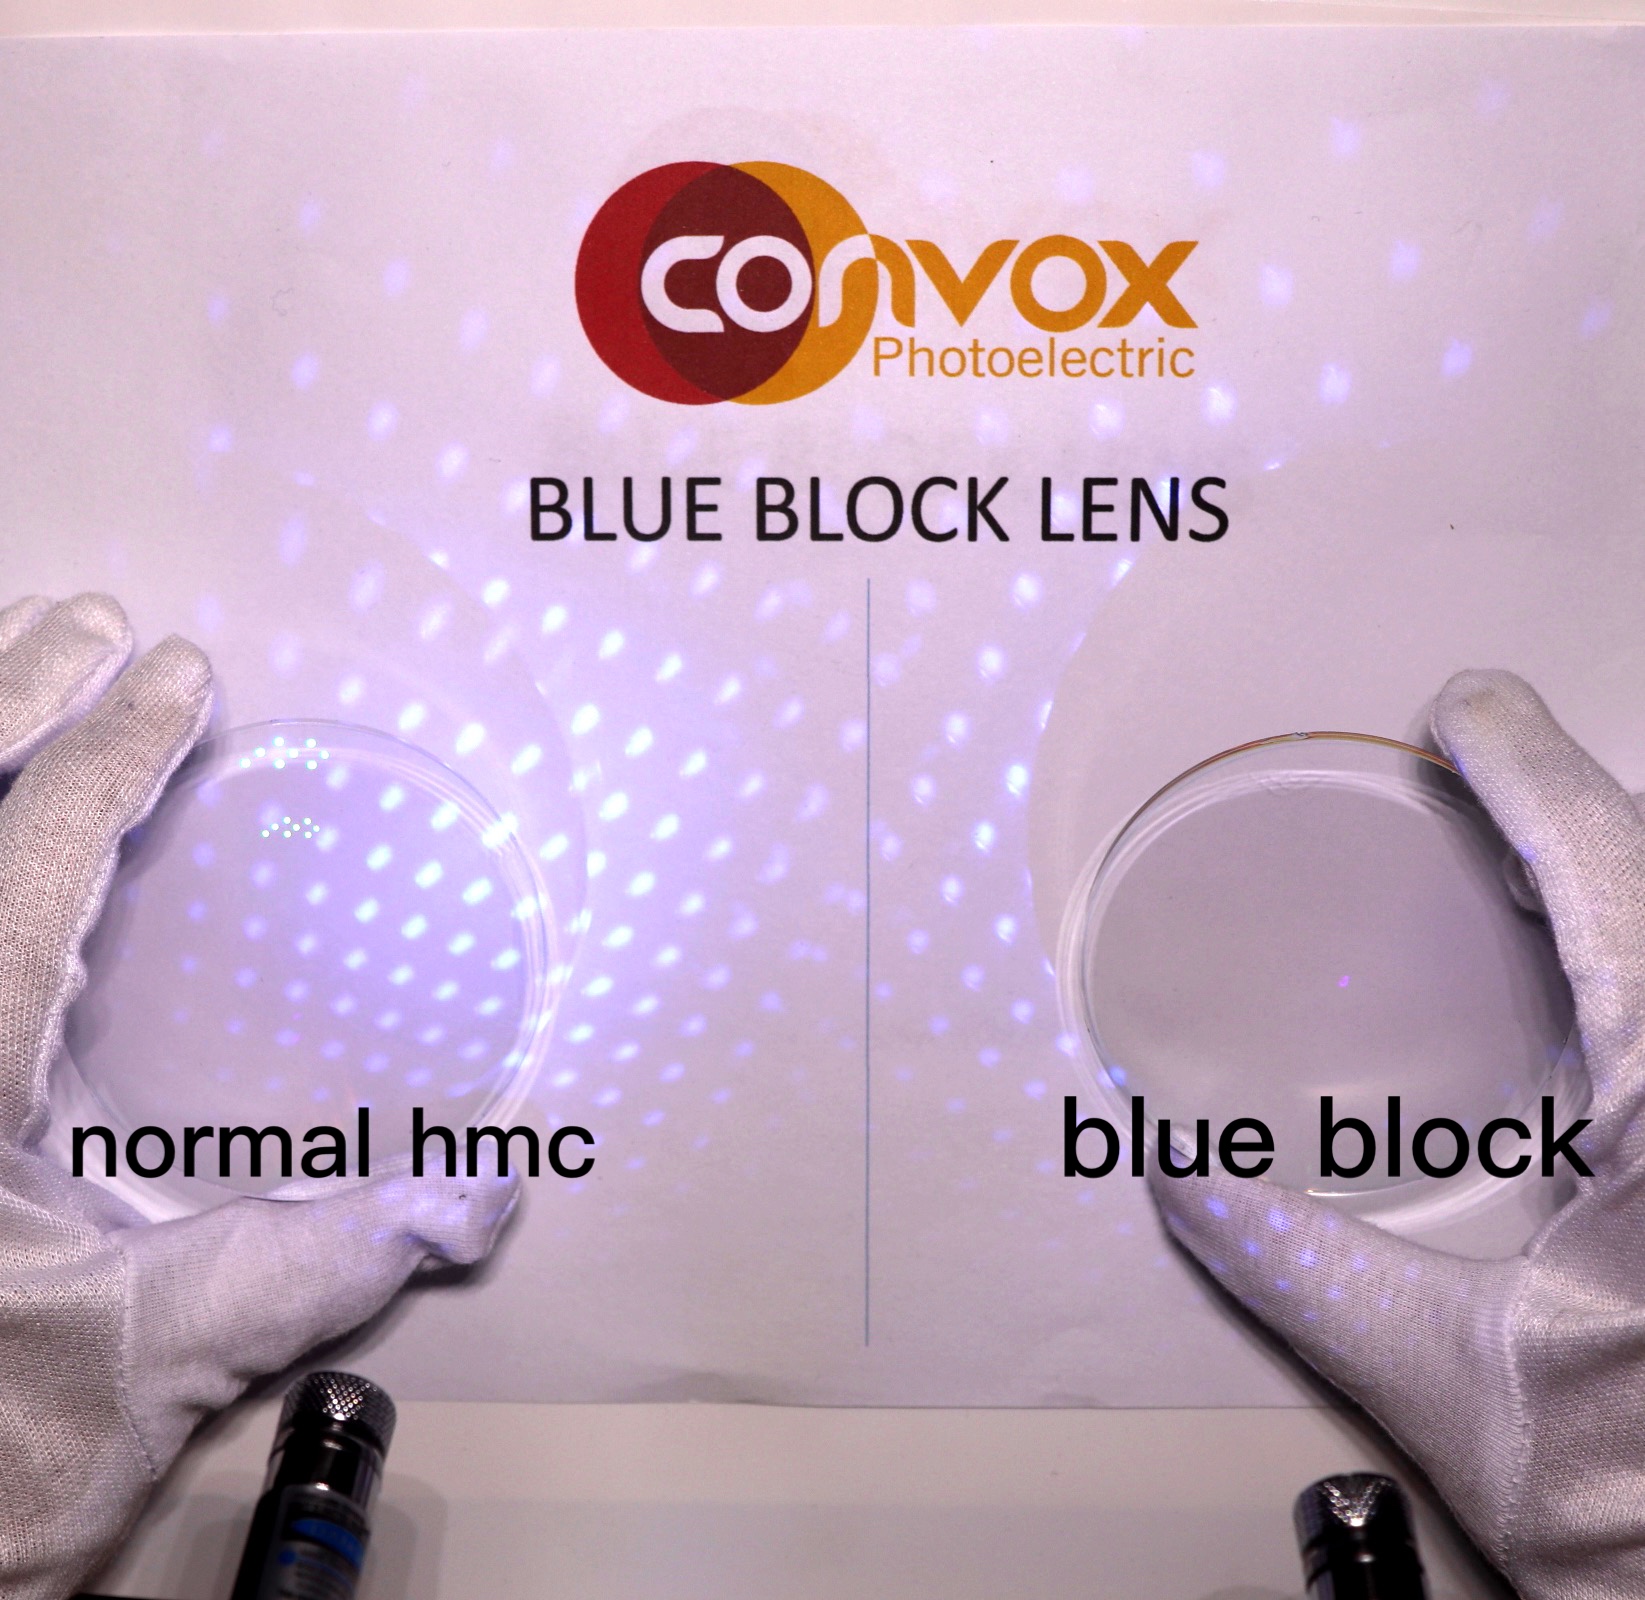 Kas sinised plokkprillid võivad kaitsta silmi ja vältida lühinägelikkust?Pange tähele!Ei sobi kõigile